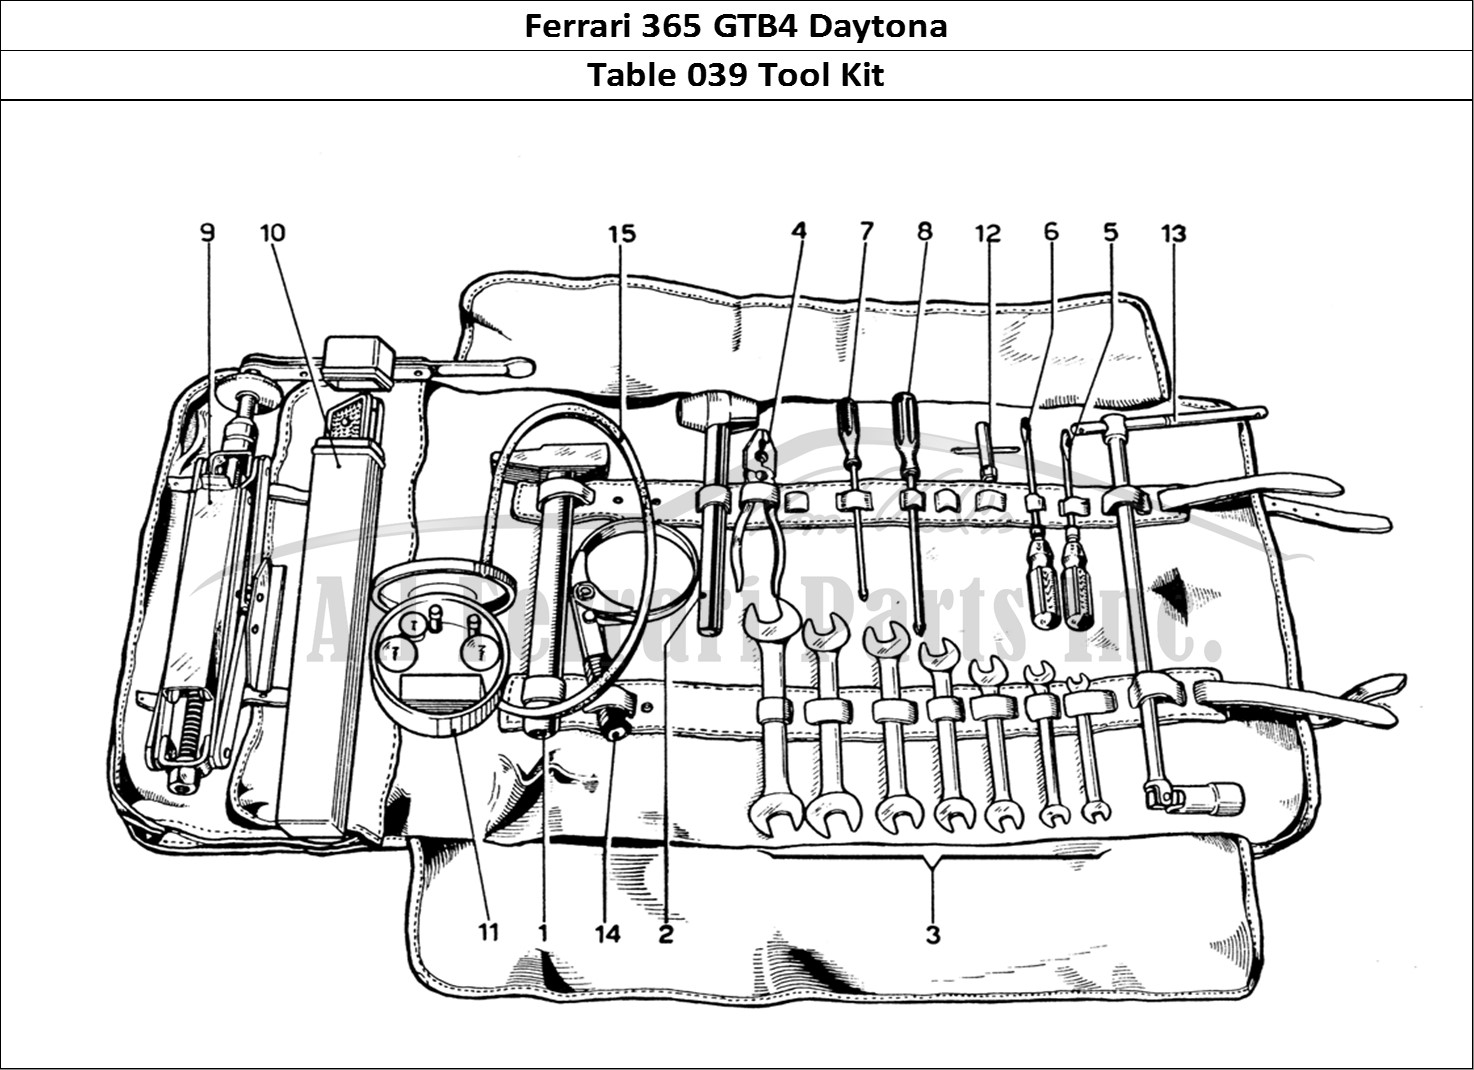 Ferrari Parts Ferrari 365 GTB4 Daytona (1969) Page 039 Tool Kit